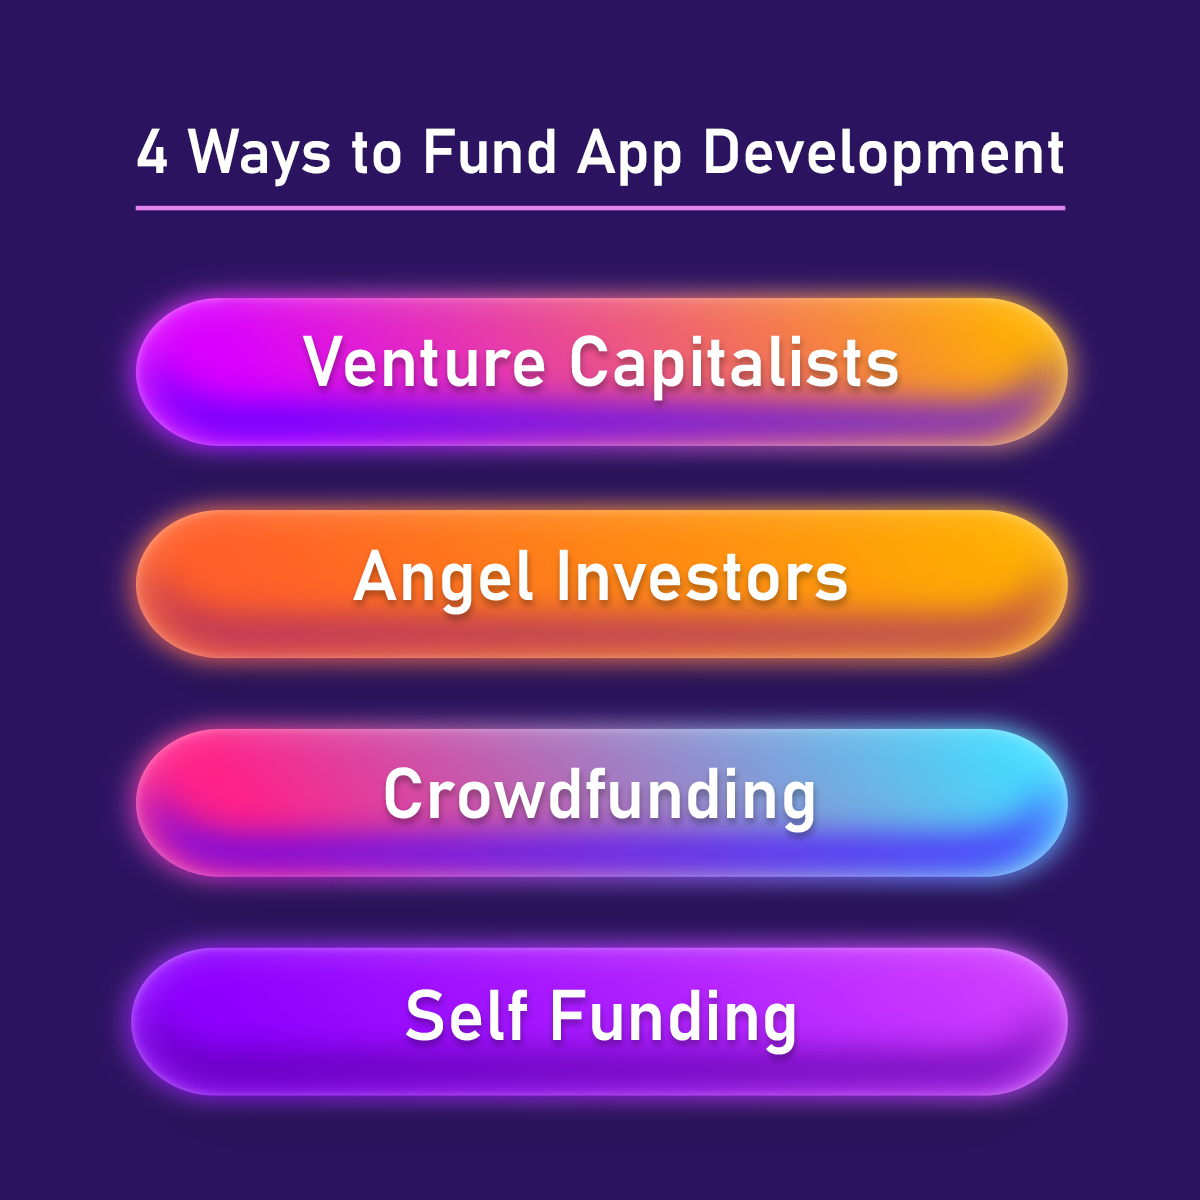 Top 4 Ways to Fund App Development